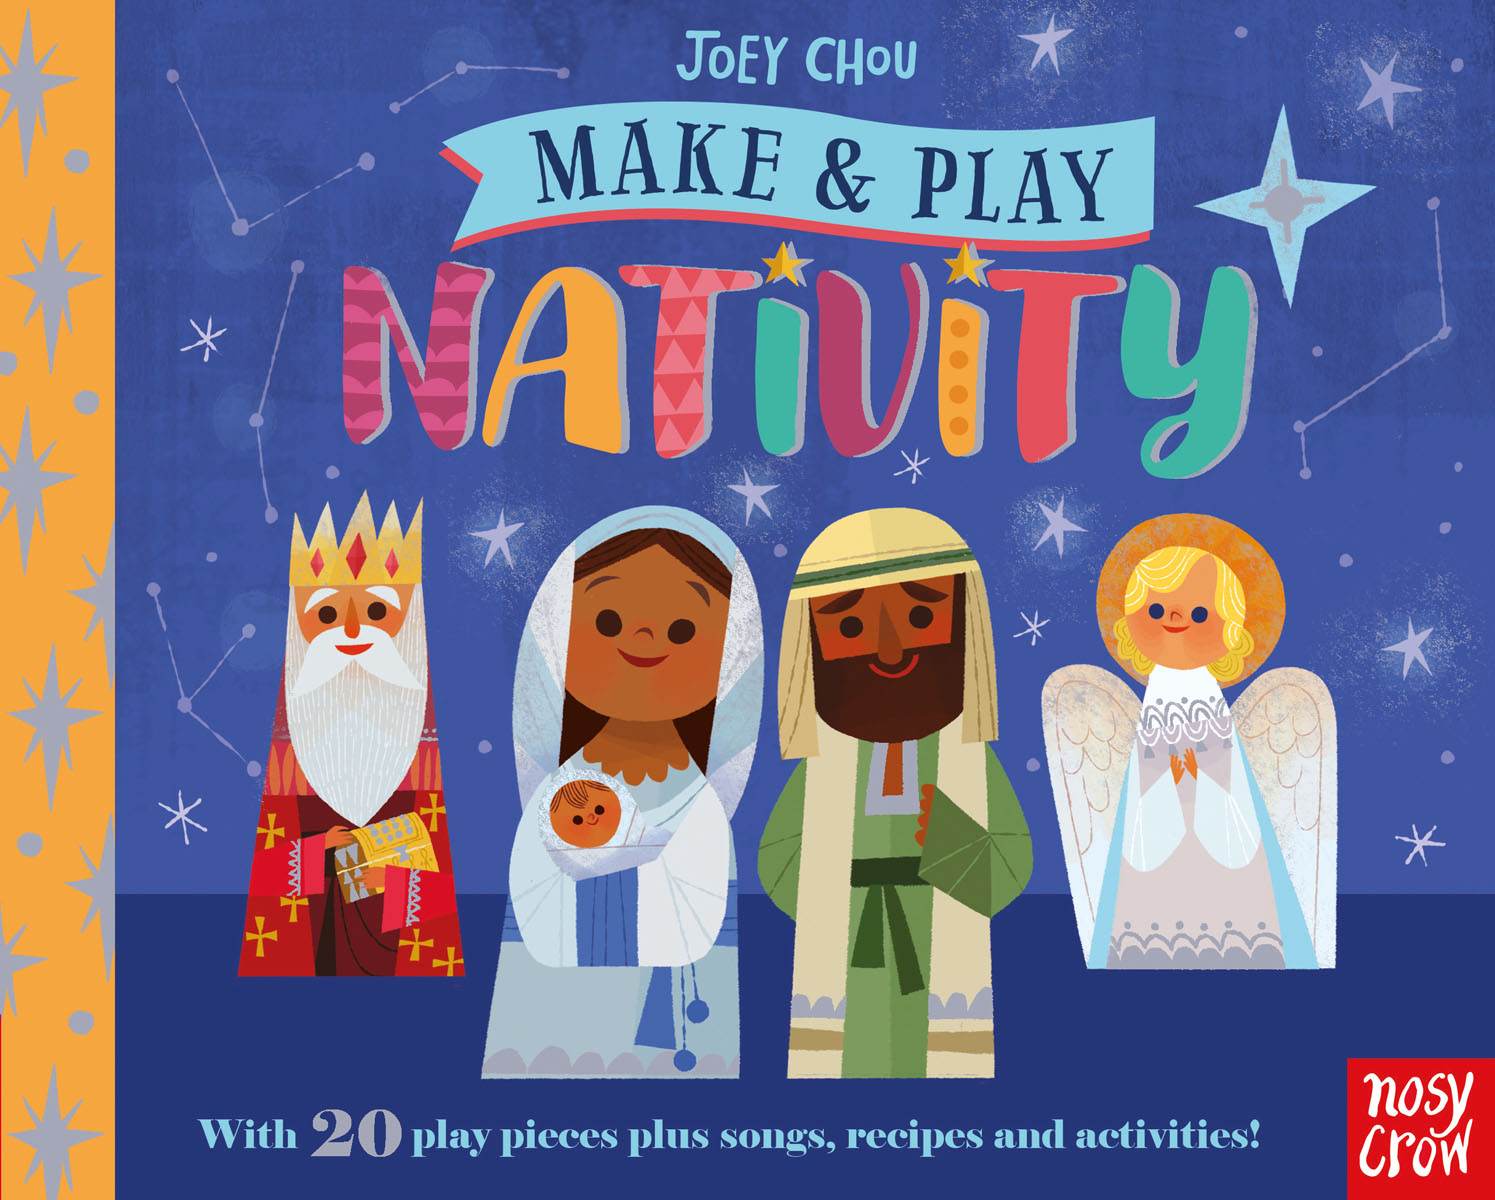 Make and Play: Nativity